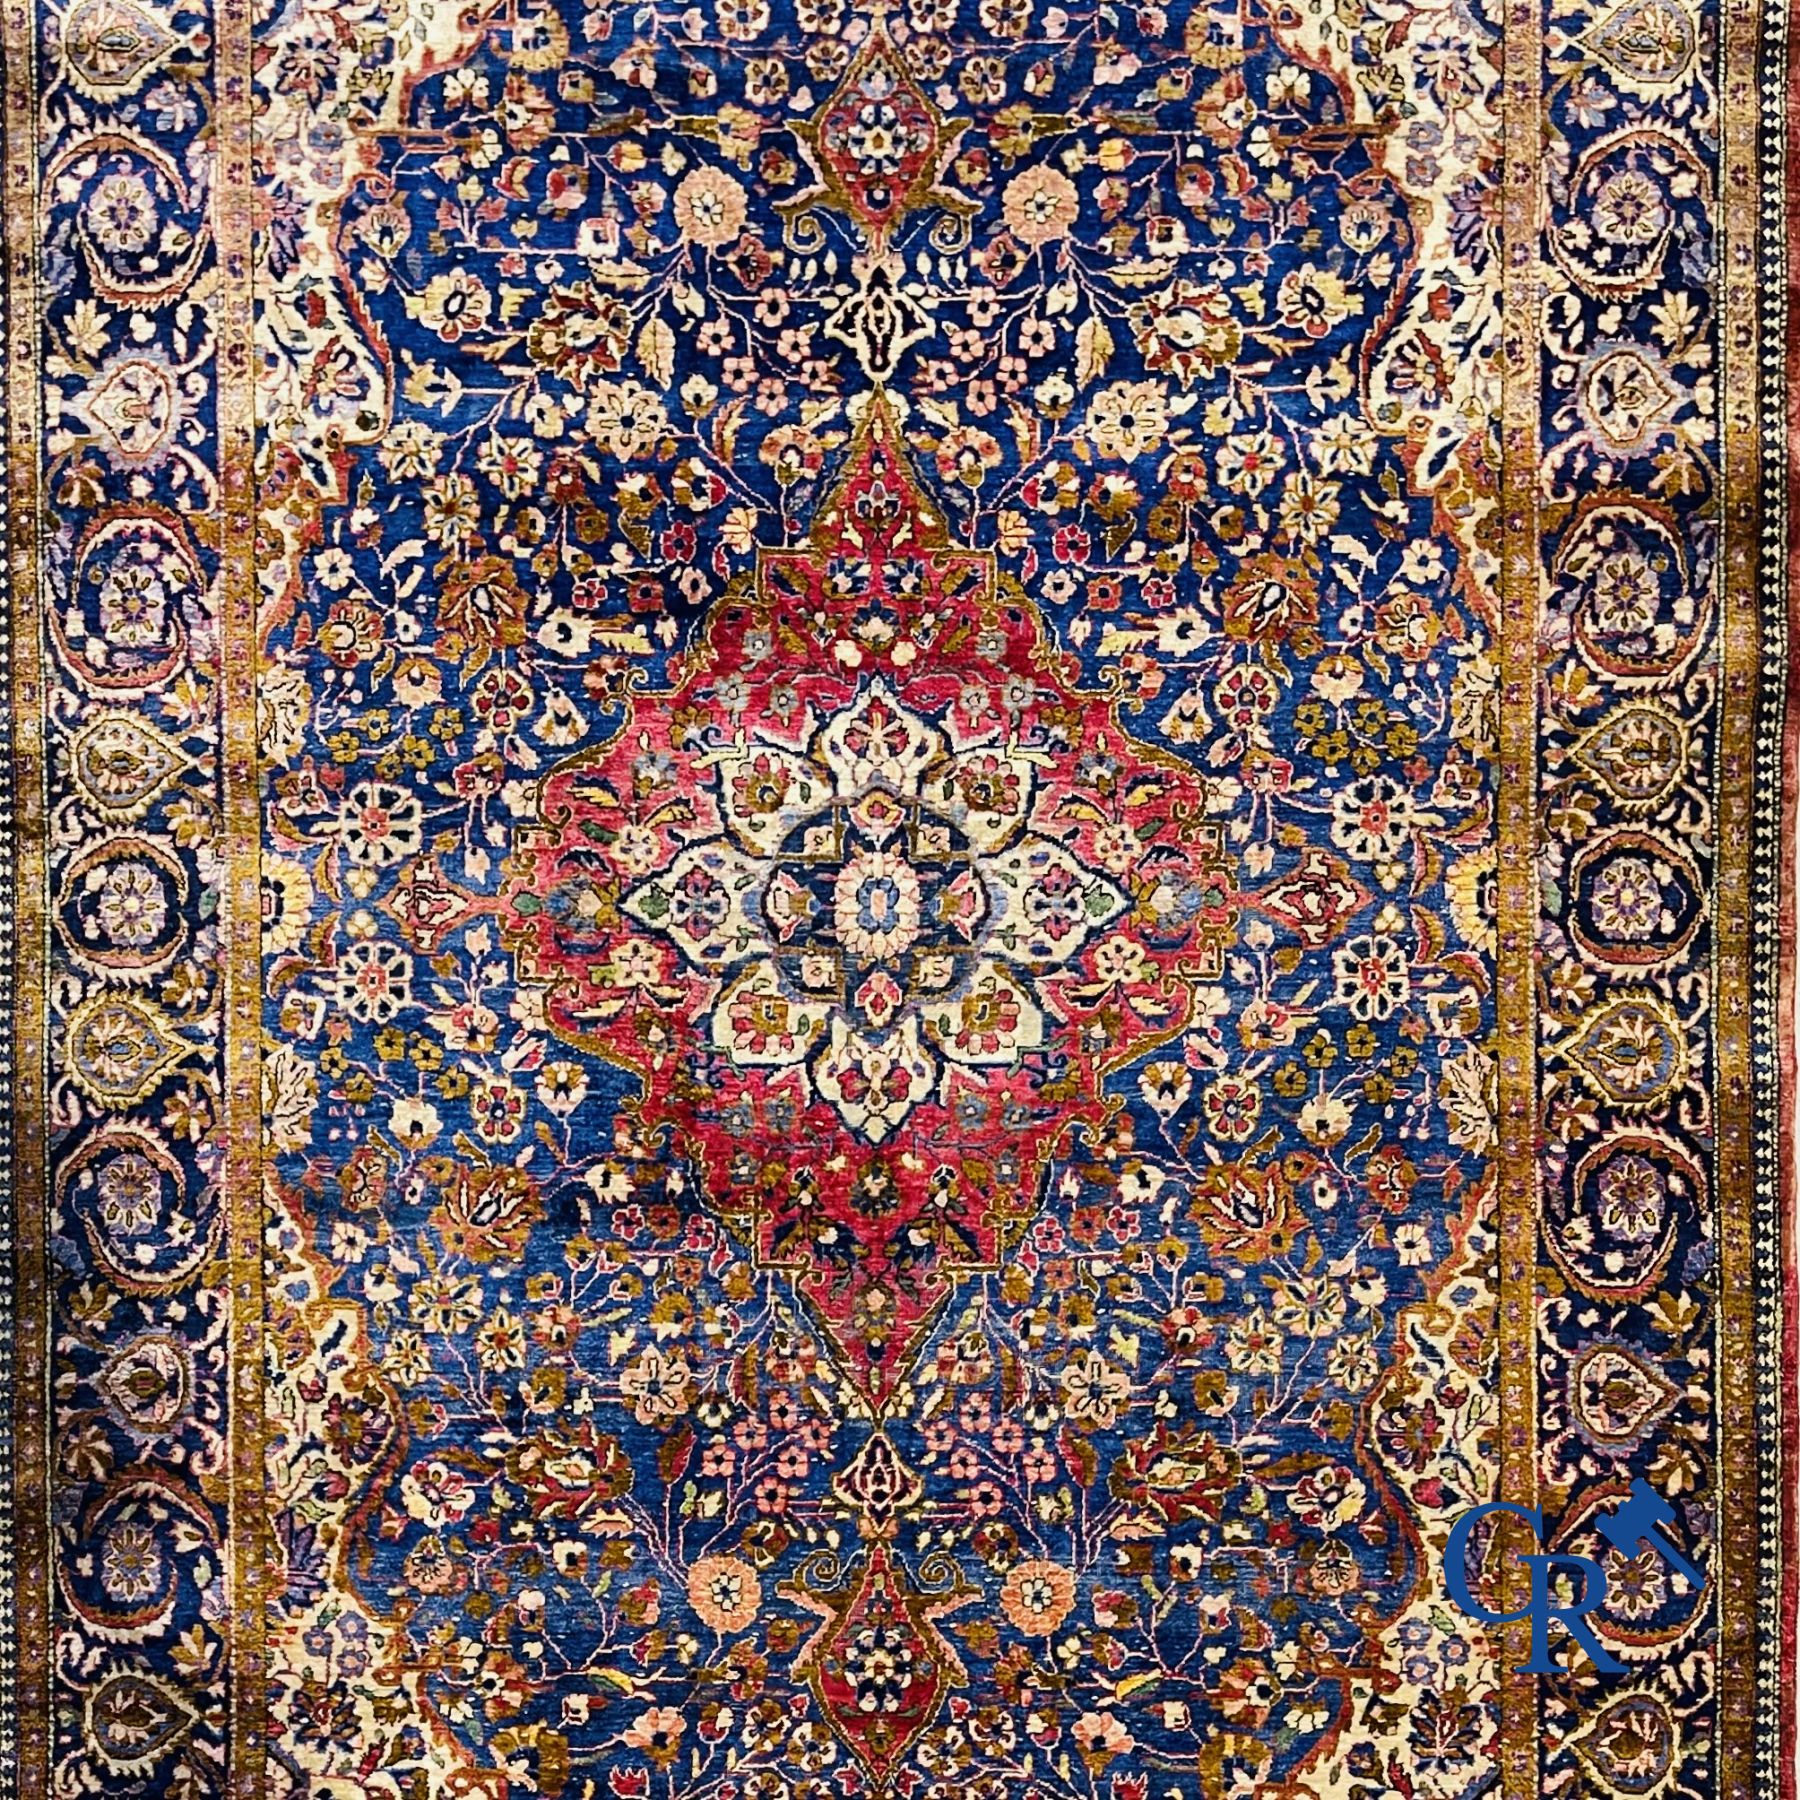 Oriental carpets: Antique silk carpet with floral decor.